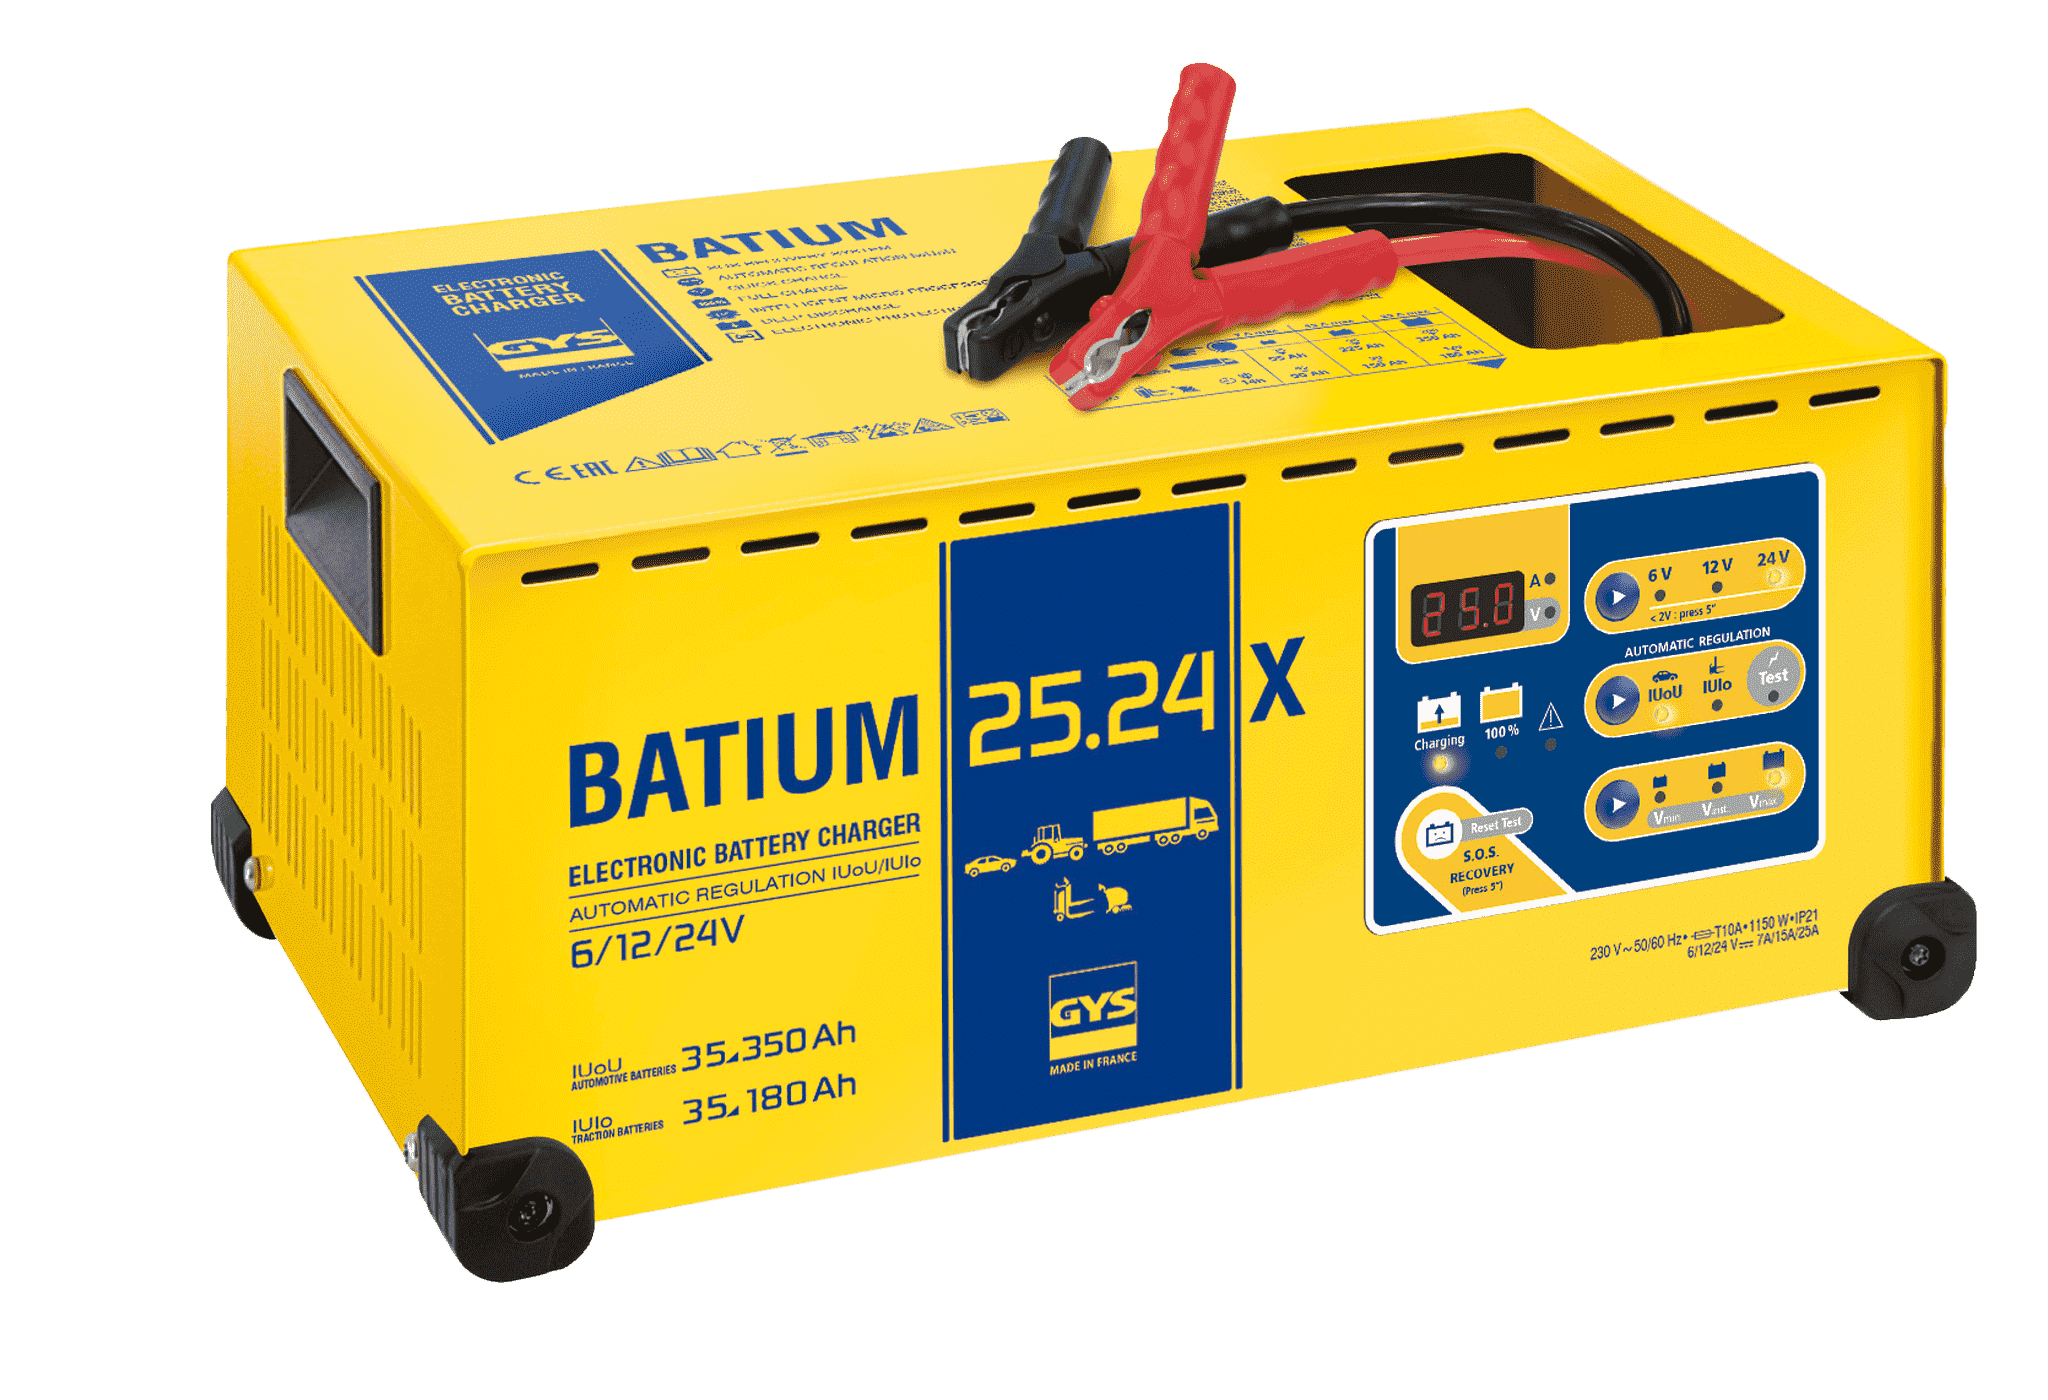 Batium 25.24X, 6V 12V & 24 Volt Car/Lorry Battery Charger 25 Amp